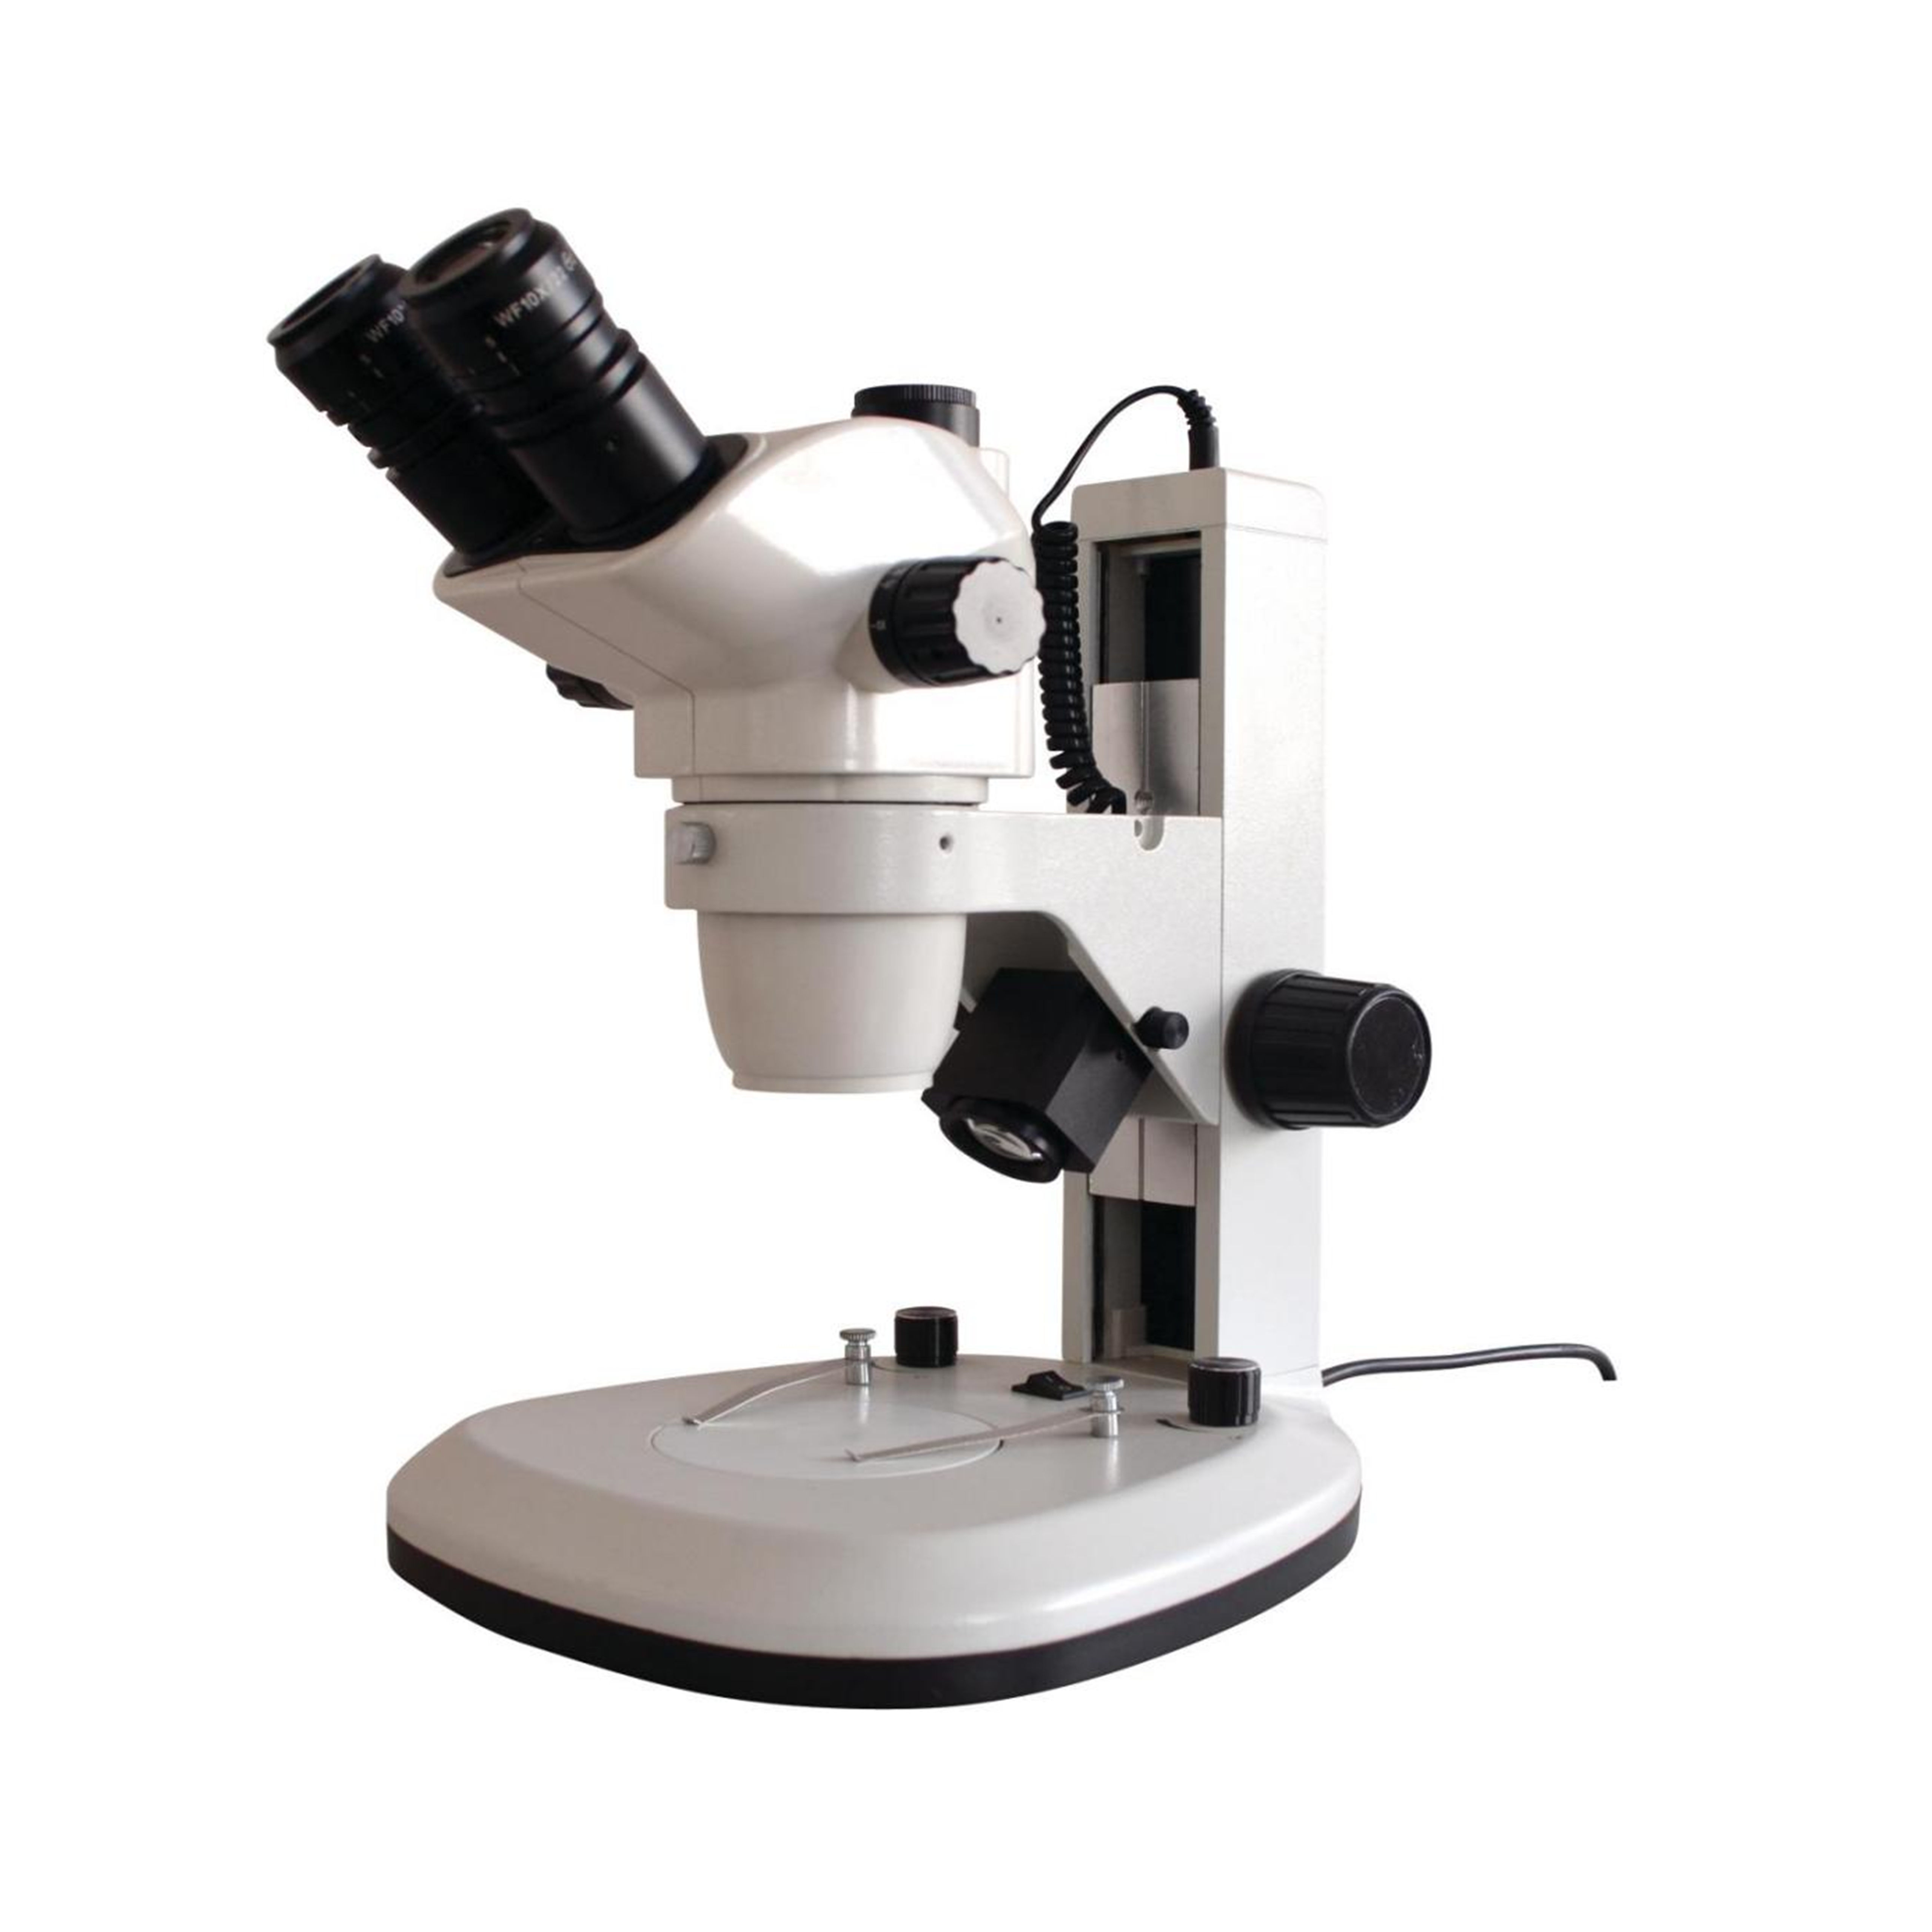  三目数码体视显微镜SZM-038